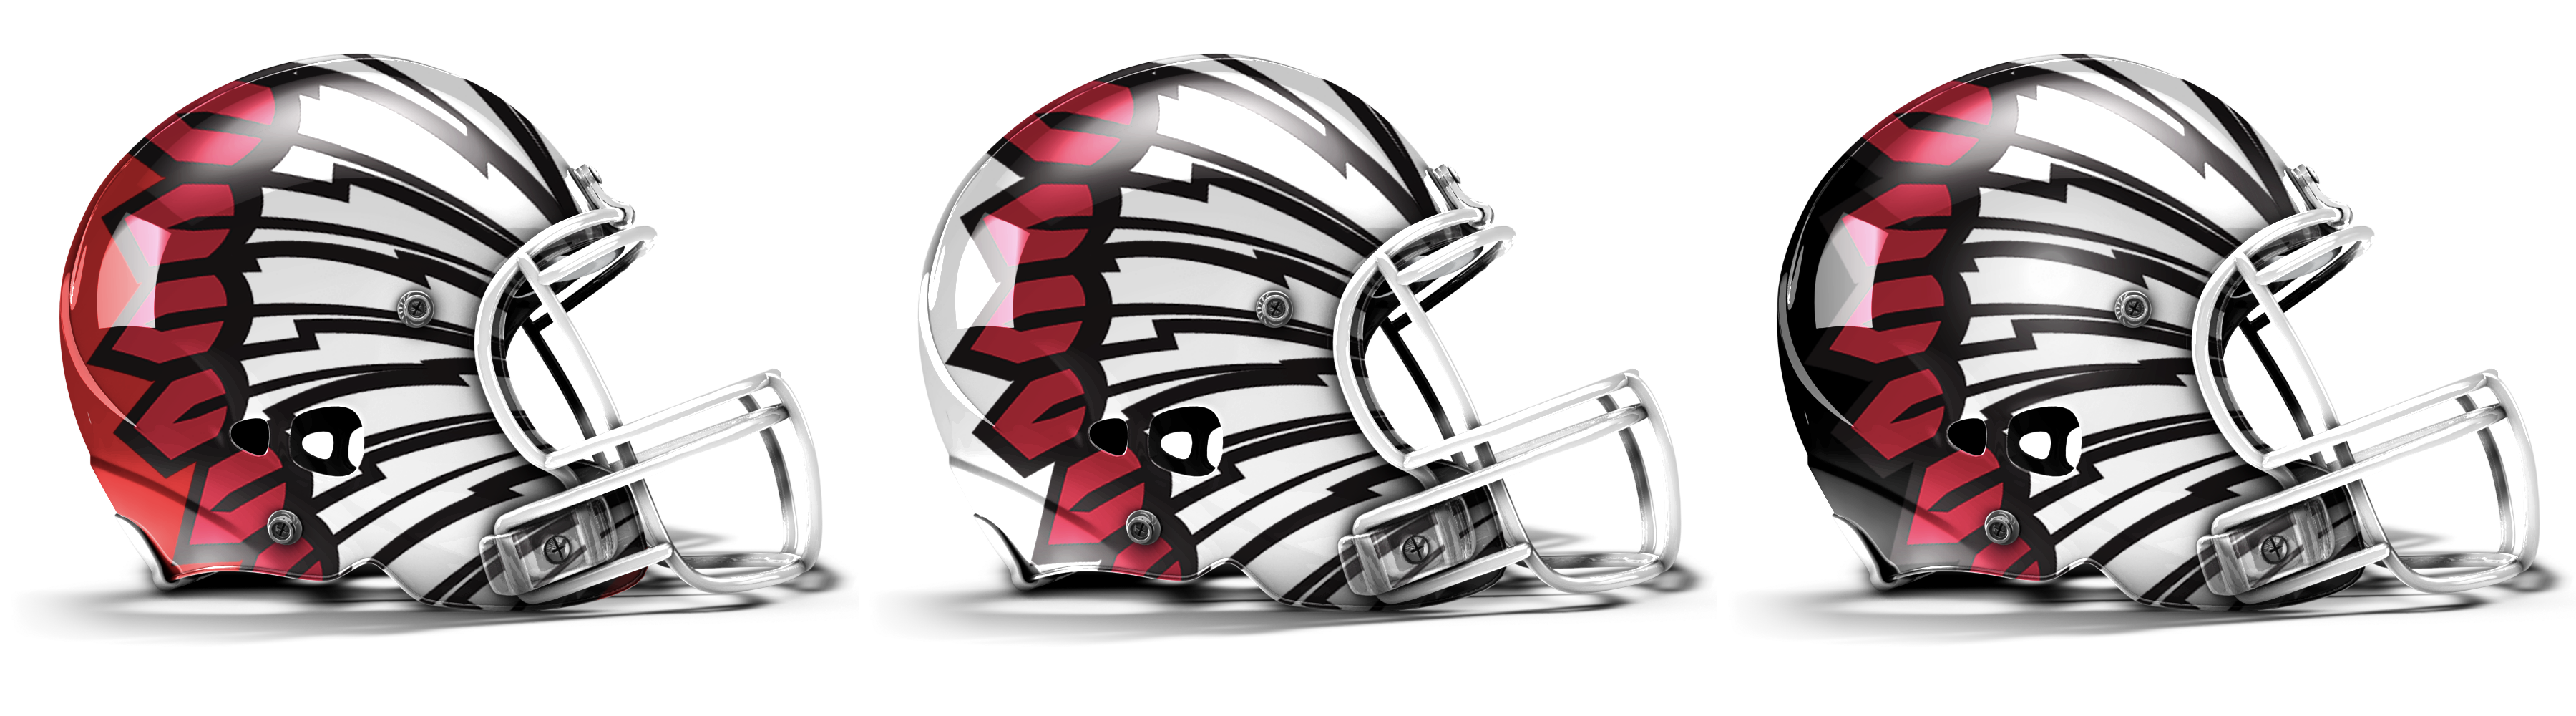 Utah State Aggies Wallpaper - University Of Utah Football New Helmets - HD Wallpaper 